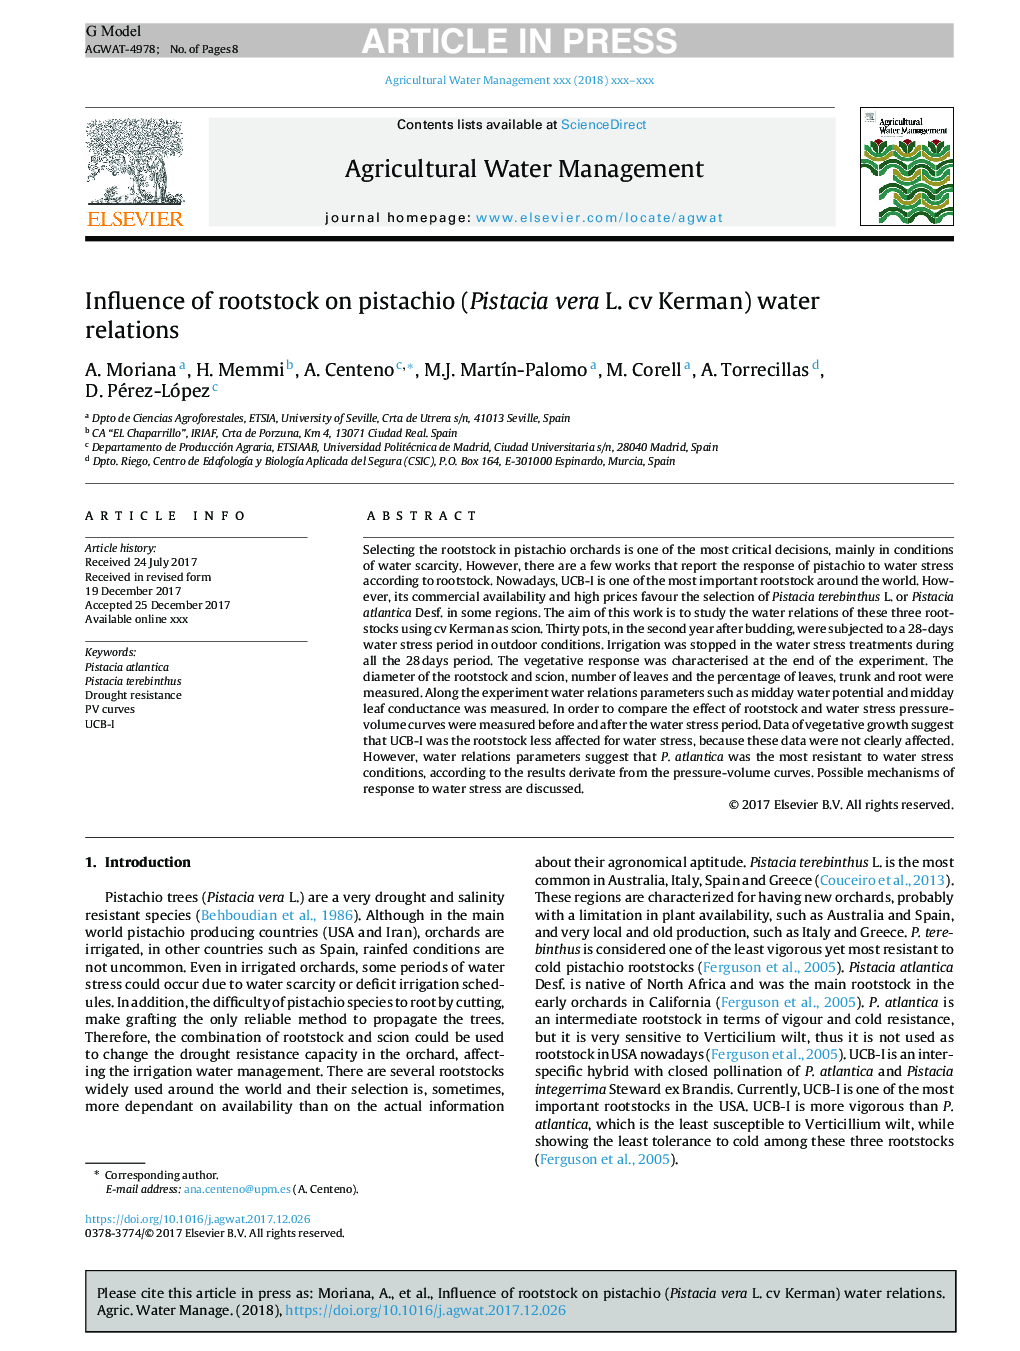 Influence of rootstock on pistachio (Pistacia vera L. cv Kerman) water relations